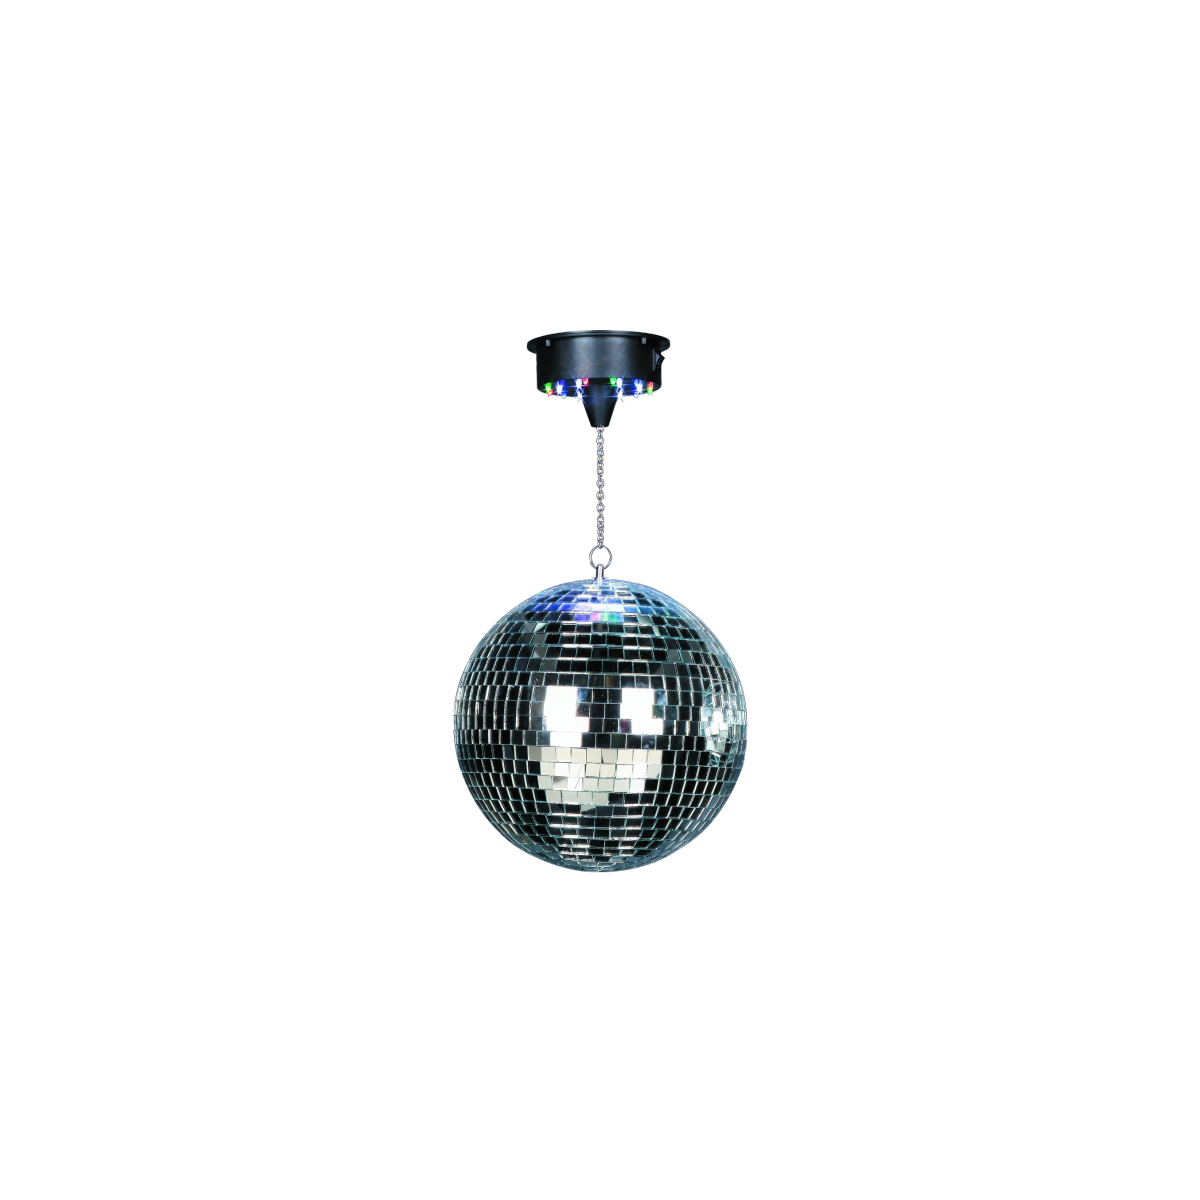 Boules à facettes - Ibiza Light - DISCO1-30